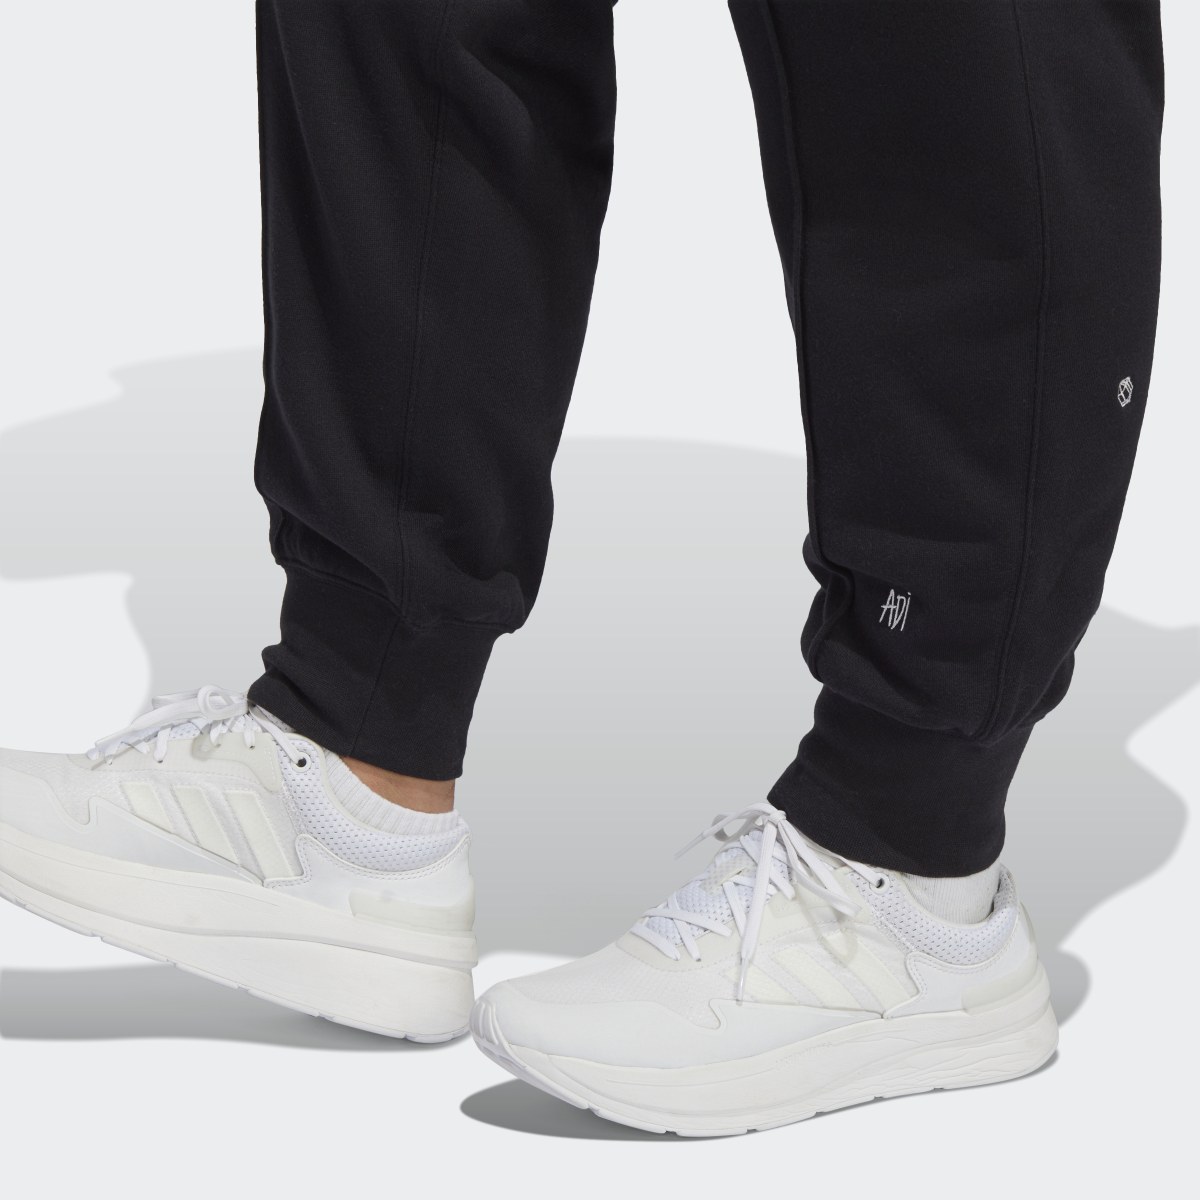 Adidas Pantalon sportswear avec graphismes inspirés de la lithothérapie (Grandes tailles). 6